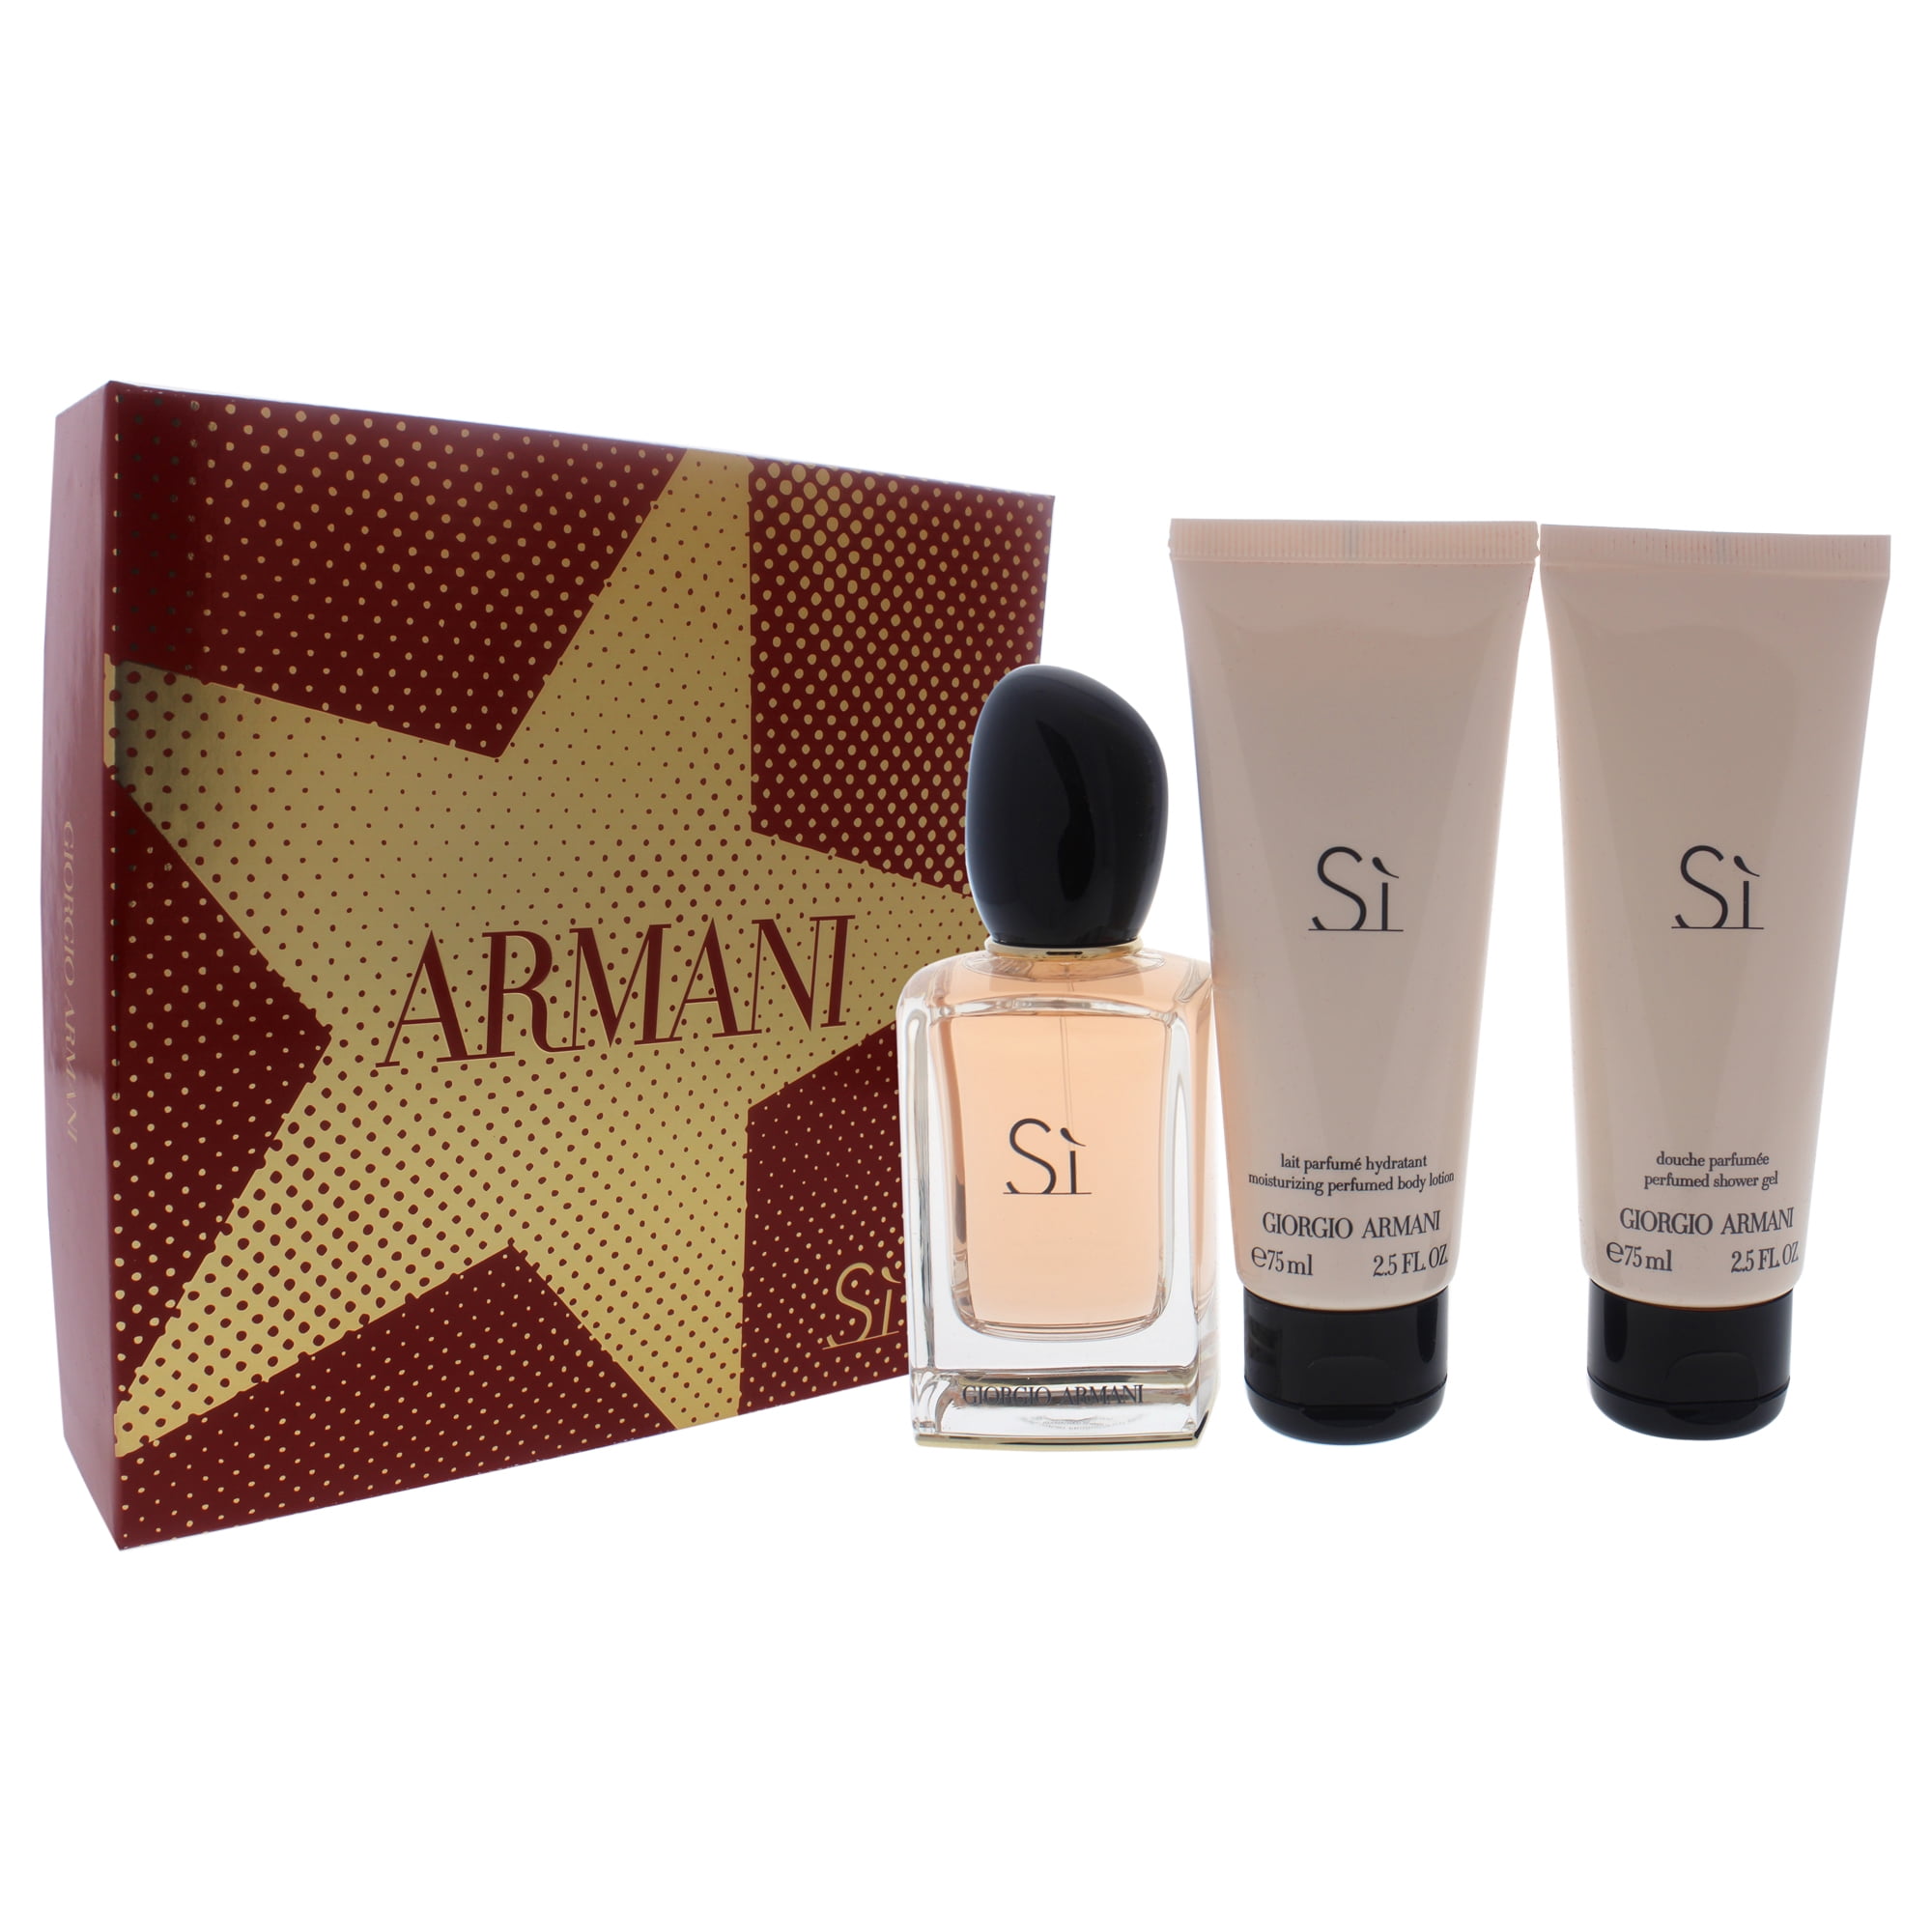 giorgio armani si moisturizing perfumed body lotion